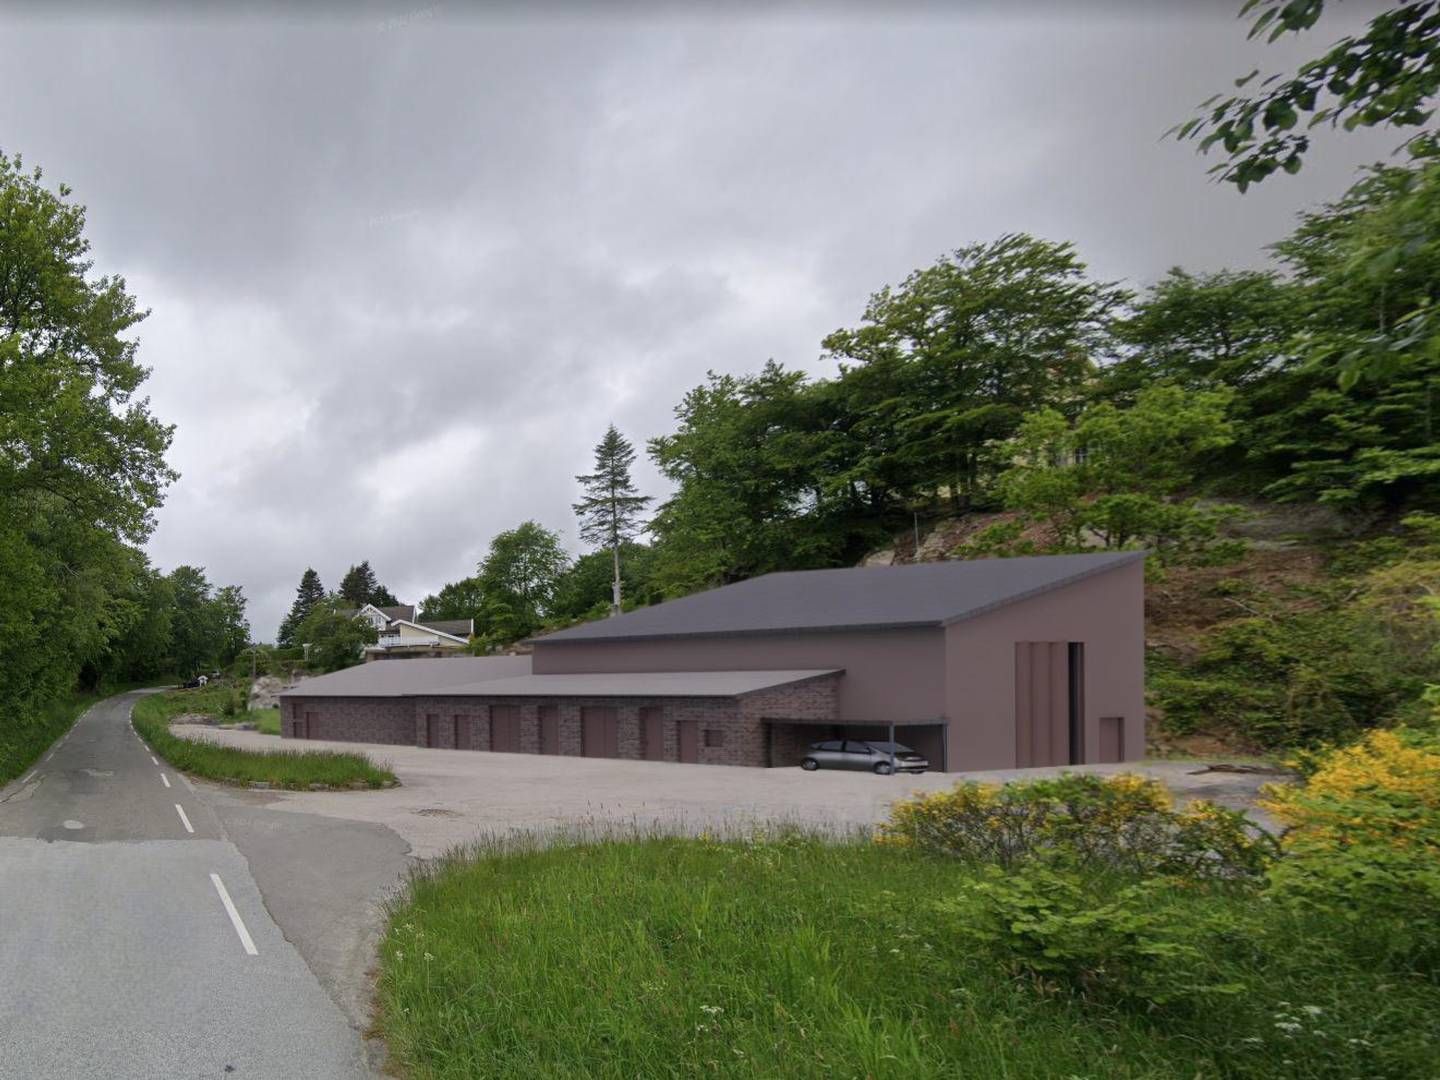 HURTIGSPOR: Norges vassdrags- og energidirektorat (NVE) har gitt Glitre Nett konsesjon til bygging av ny Vanse transformatorstasjon i Farsund kommune. | Foto: Glitre Nett